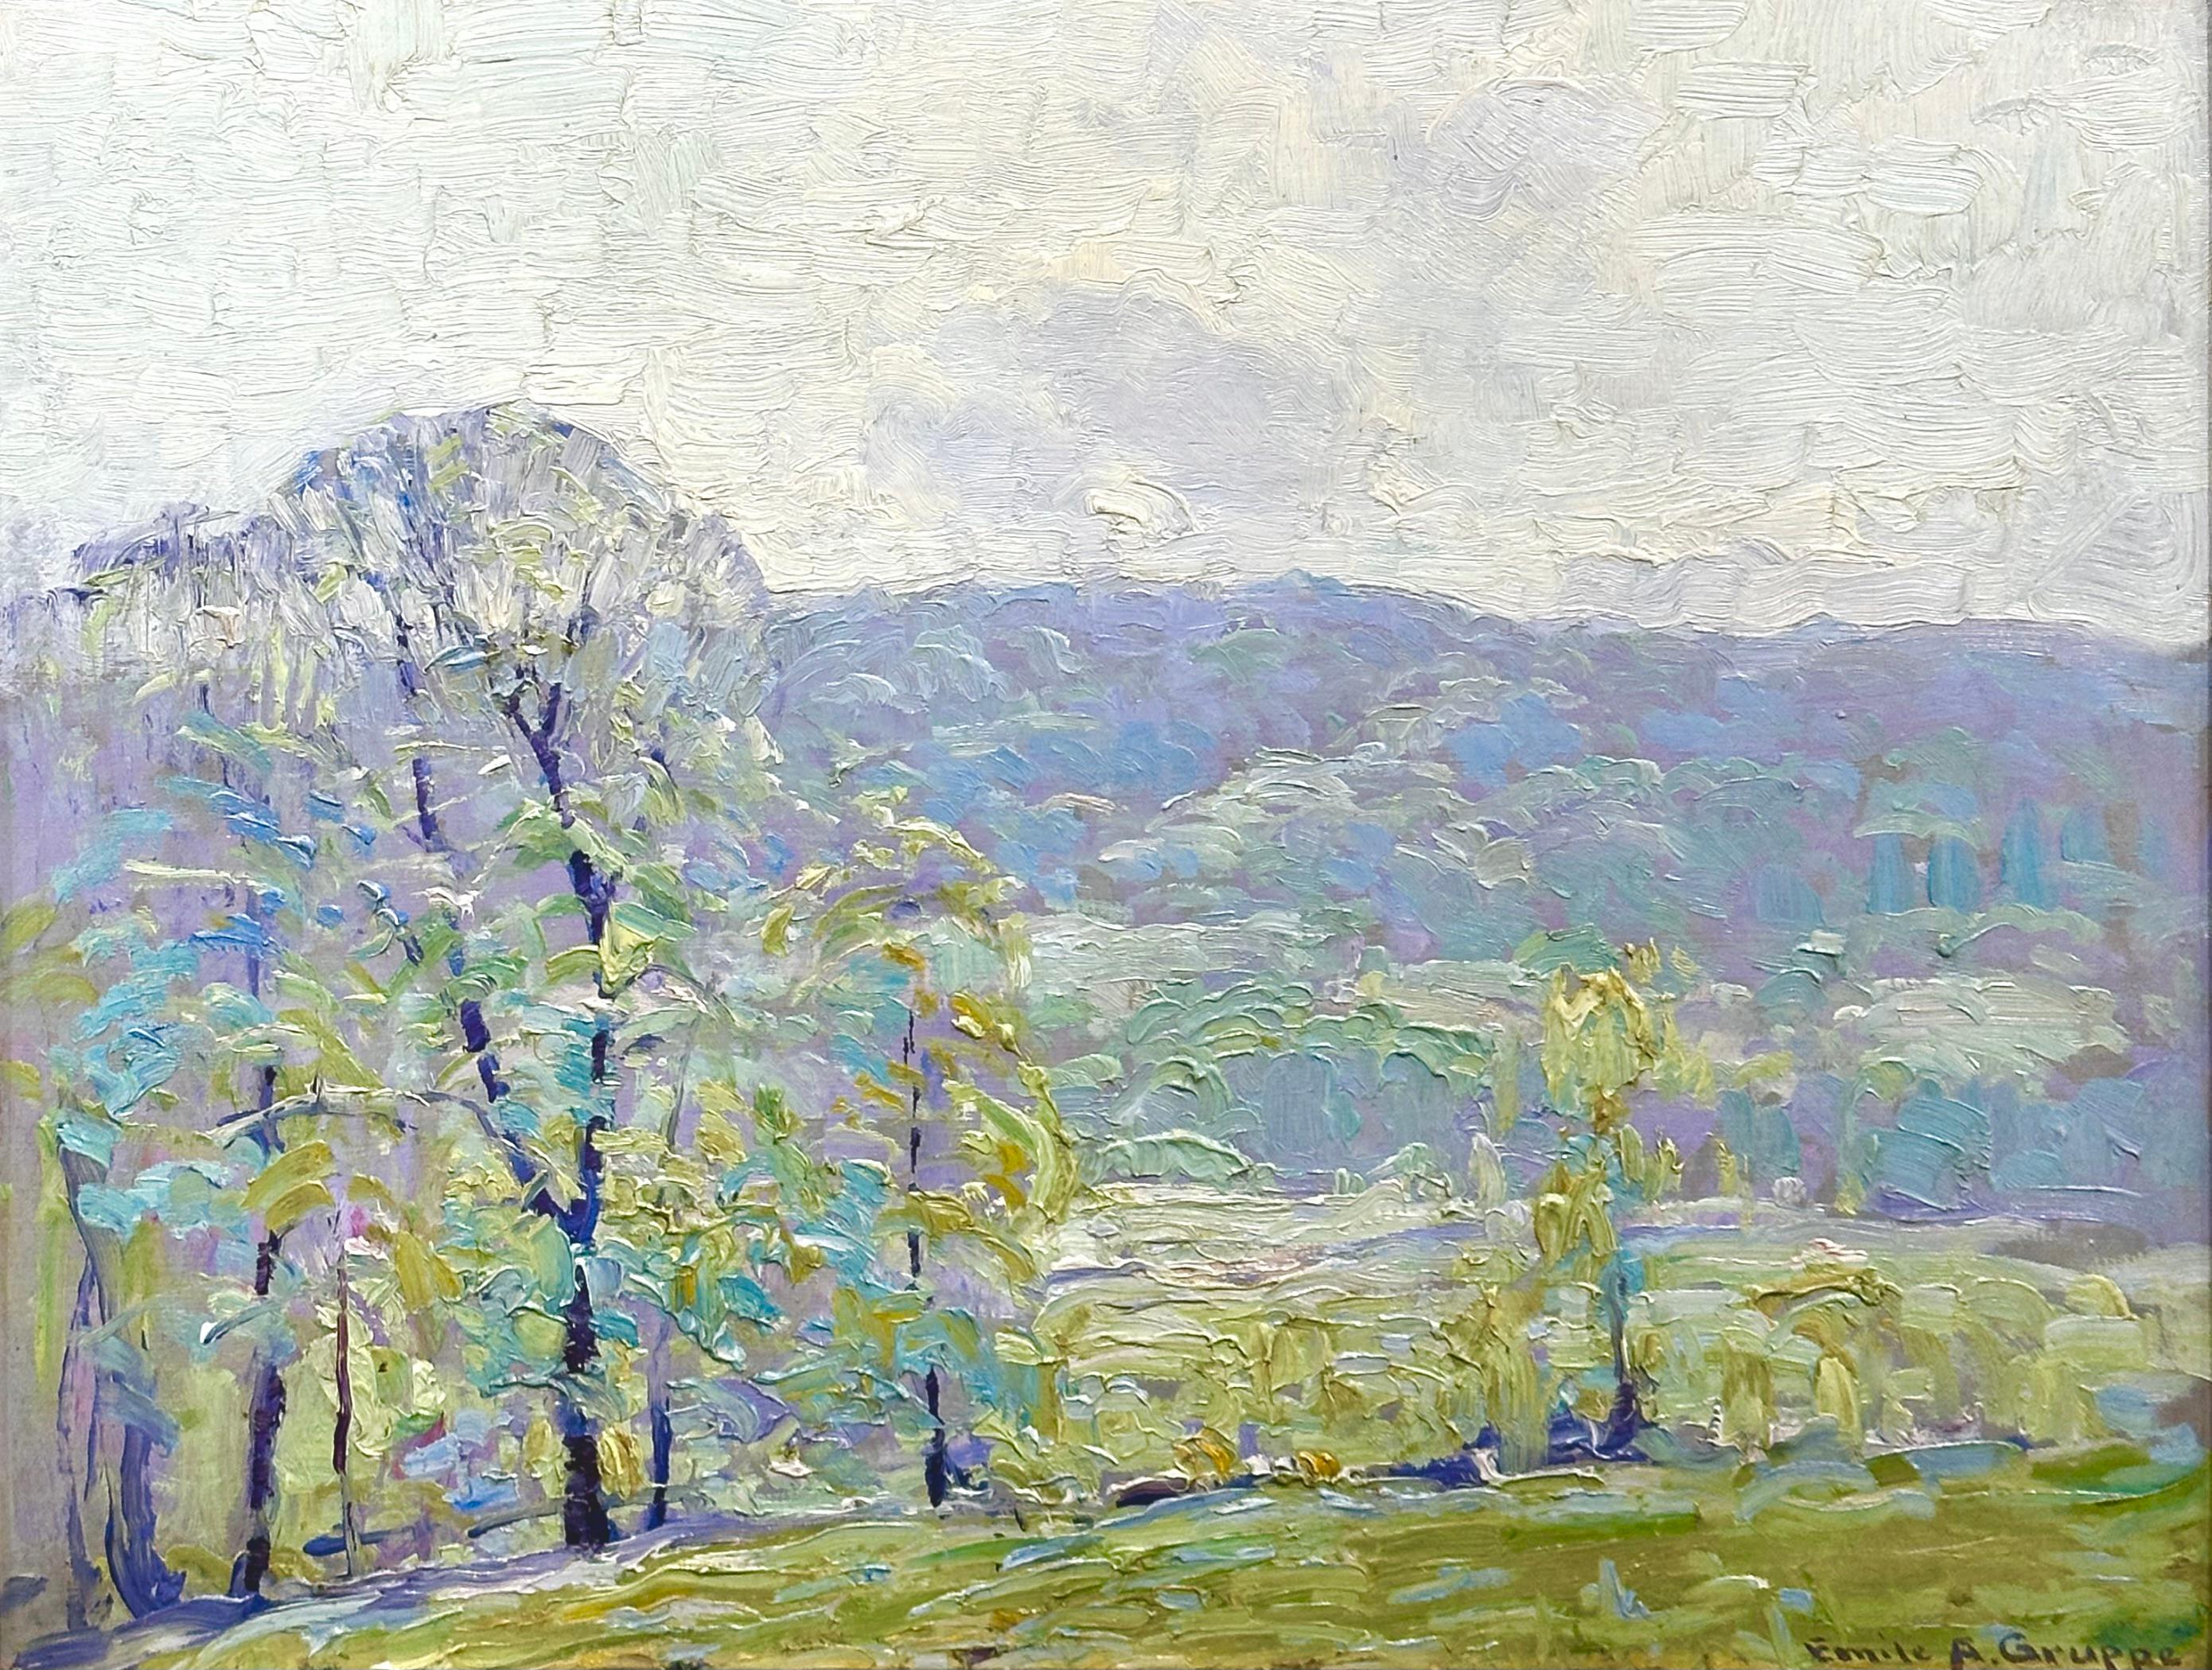 Landscape Painting Emile Gruppe - « Printemps » - Peinture impressionniste de paysage par le maître de l'école Cape Ann